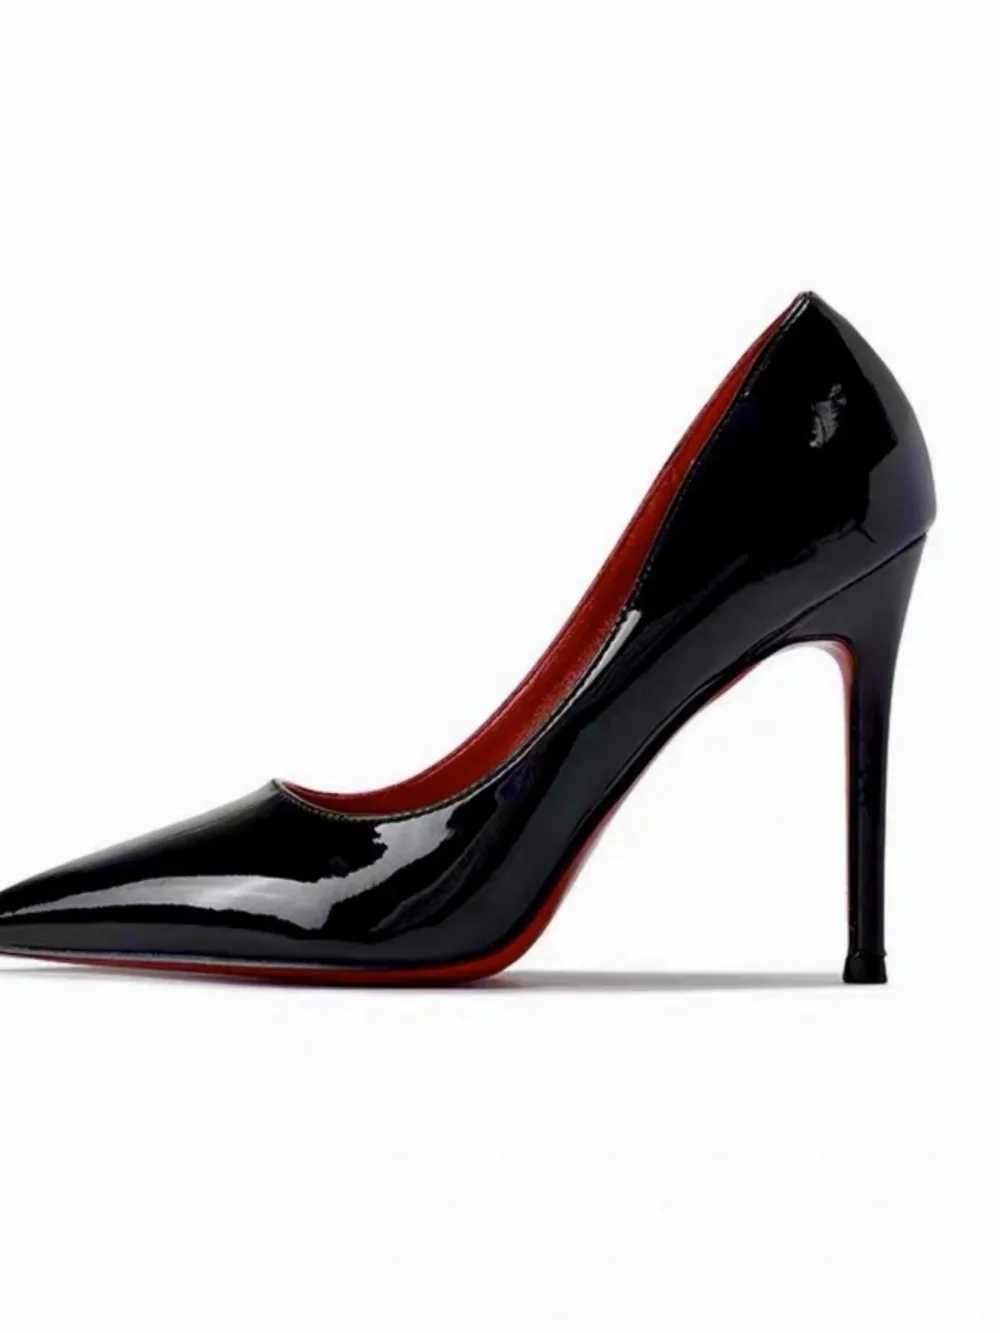 Kleiderschuhe neue rote High Heels Schuhe Womens Stiletto Schwarz elegant sexy Kleid Abendschuhe Spitze Zehen High Heel Pumpsl2404